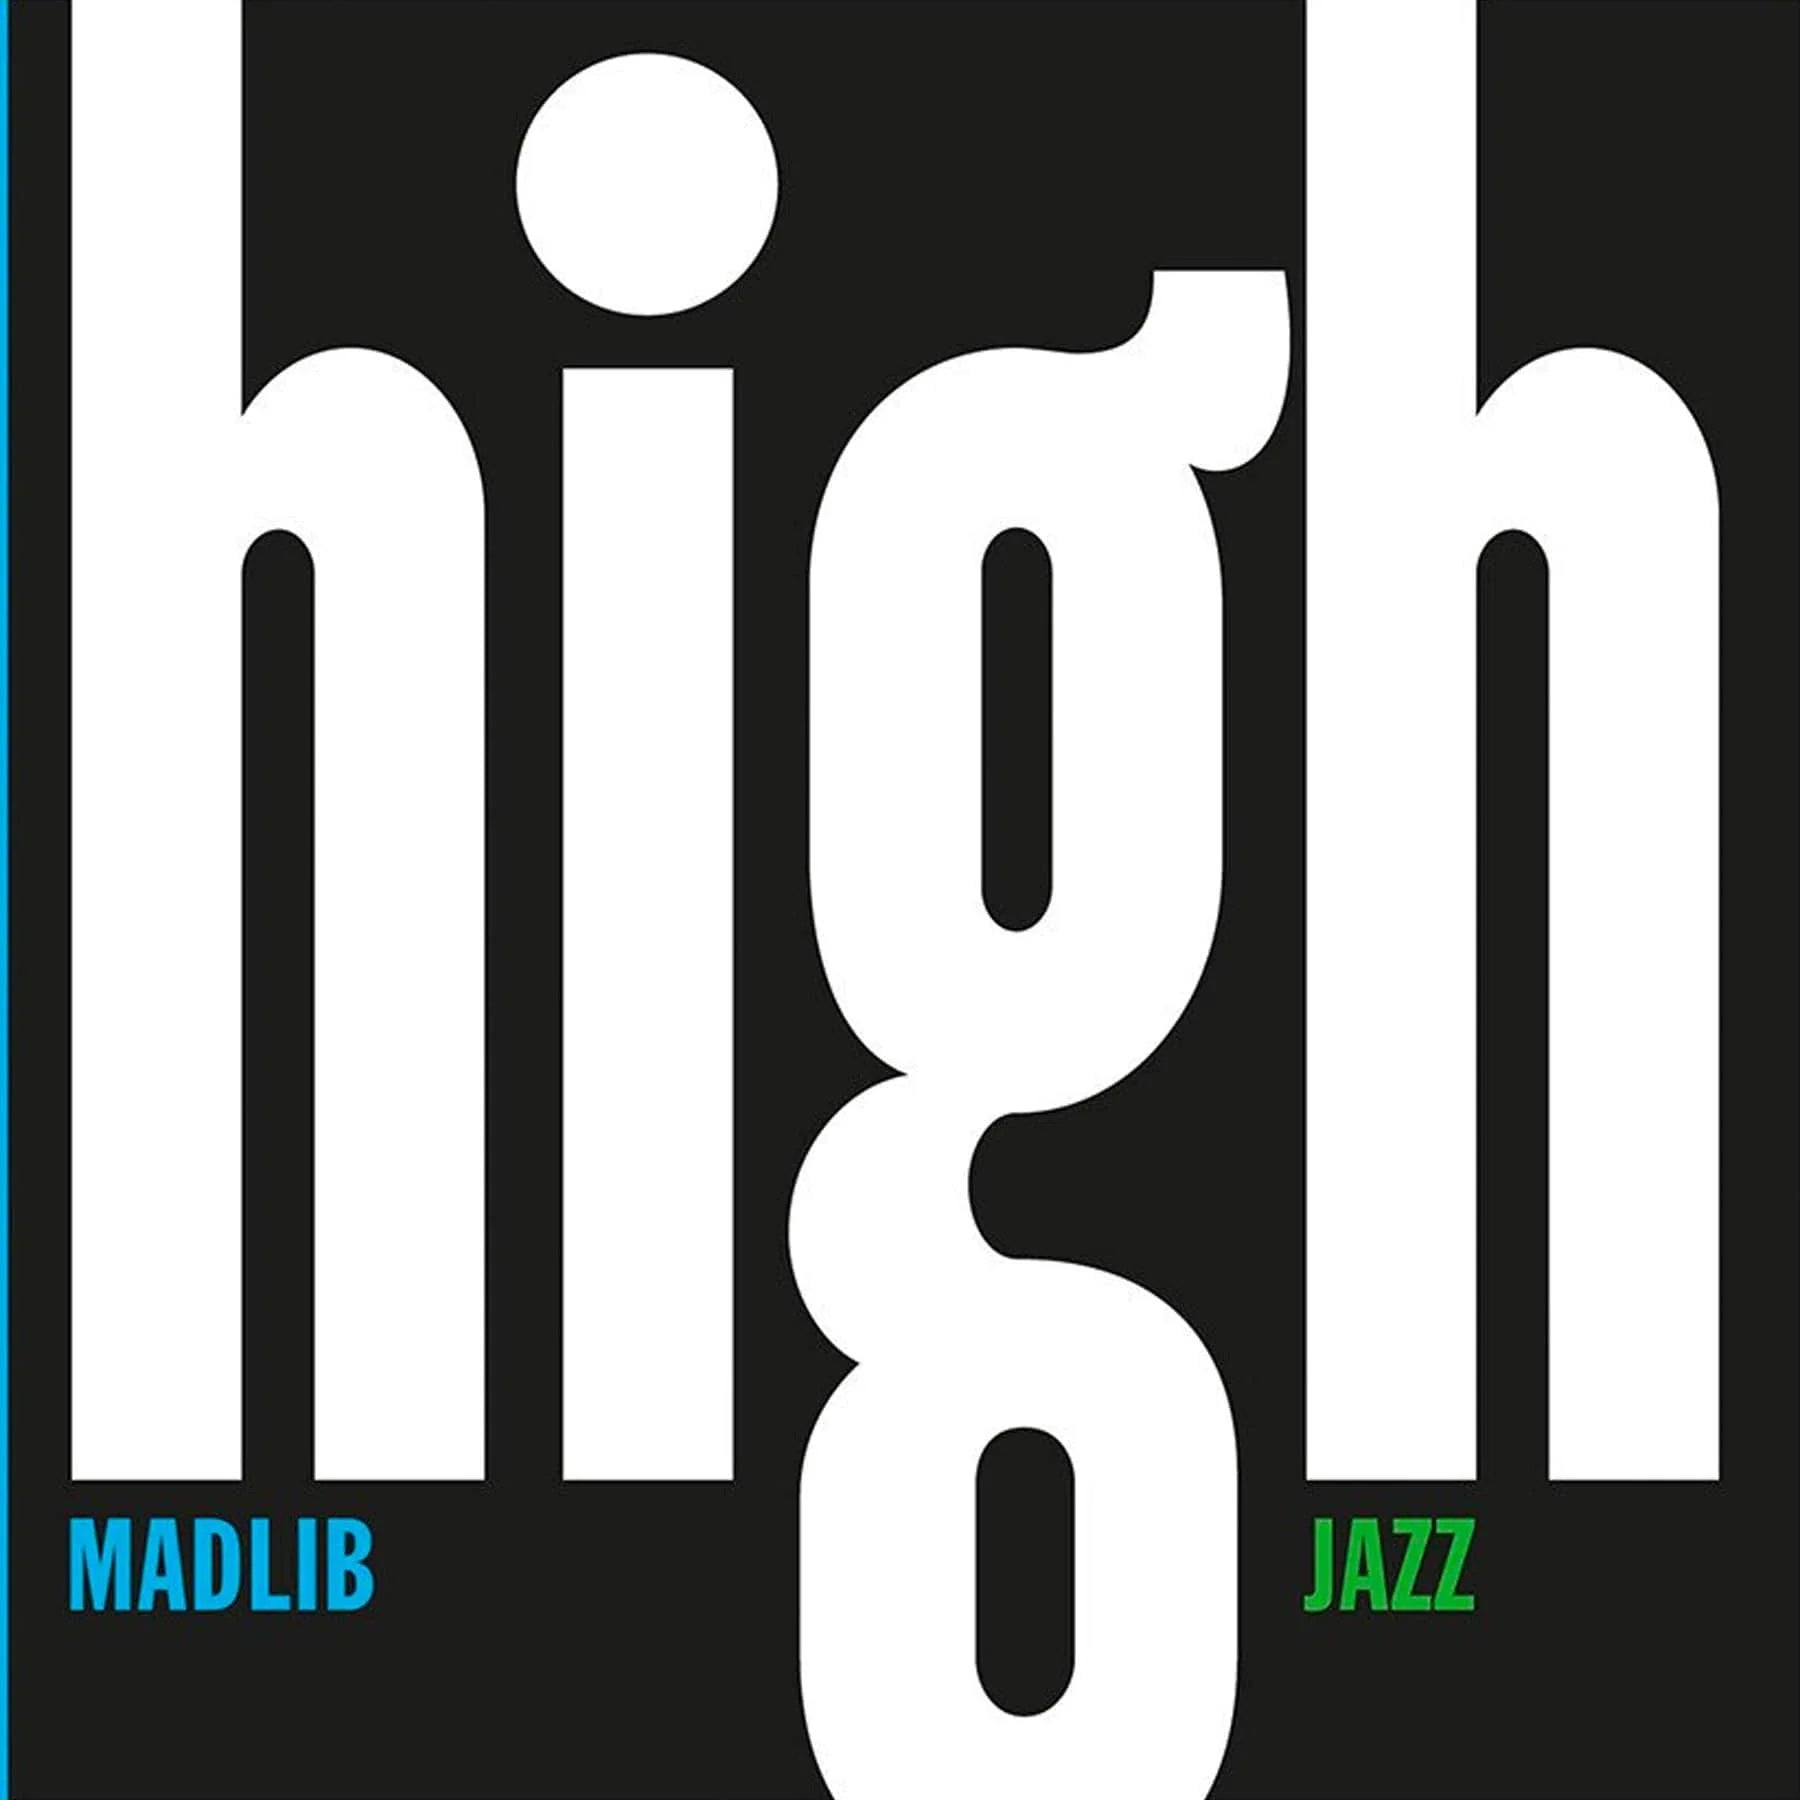 Madlib - High Jazz